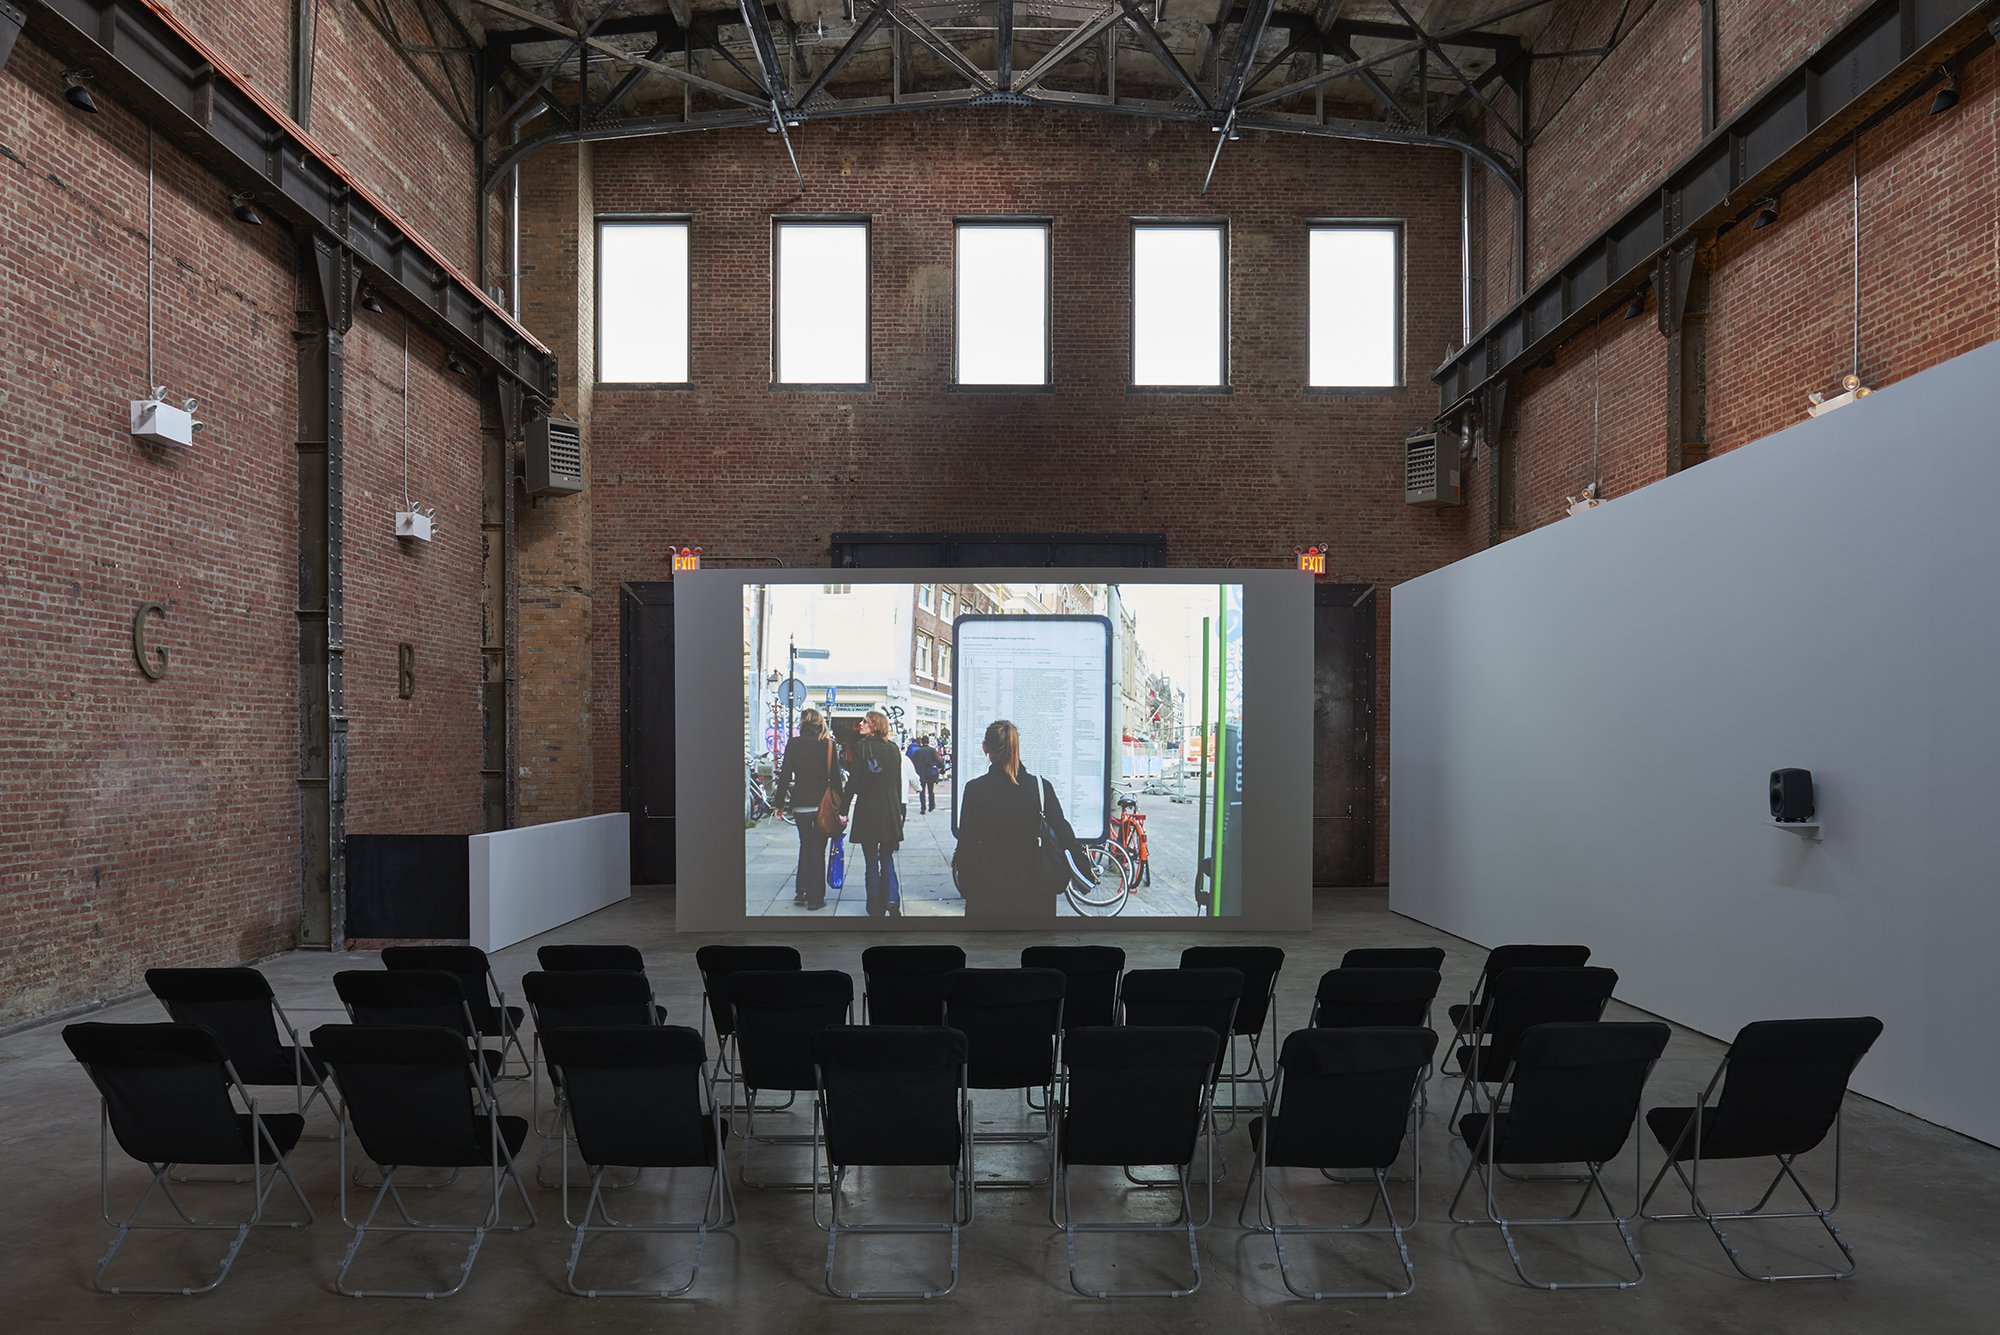 Installation view, Banu Cennetoğlu, Banu Cennetoğlu, SculptureCenter, New York, 2019